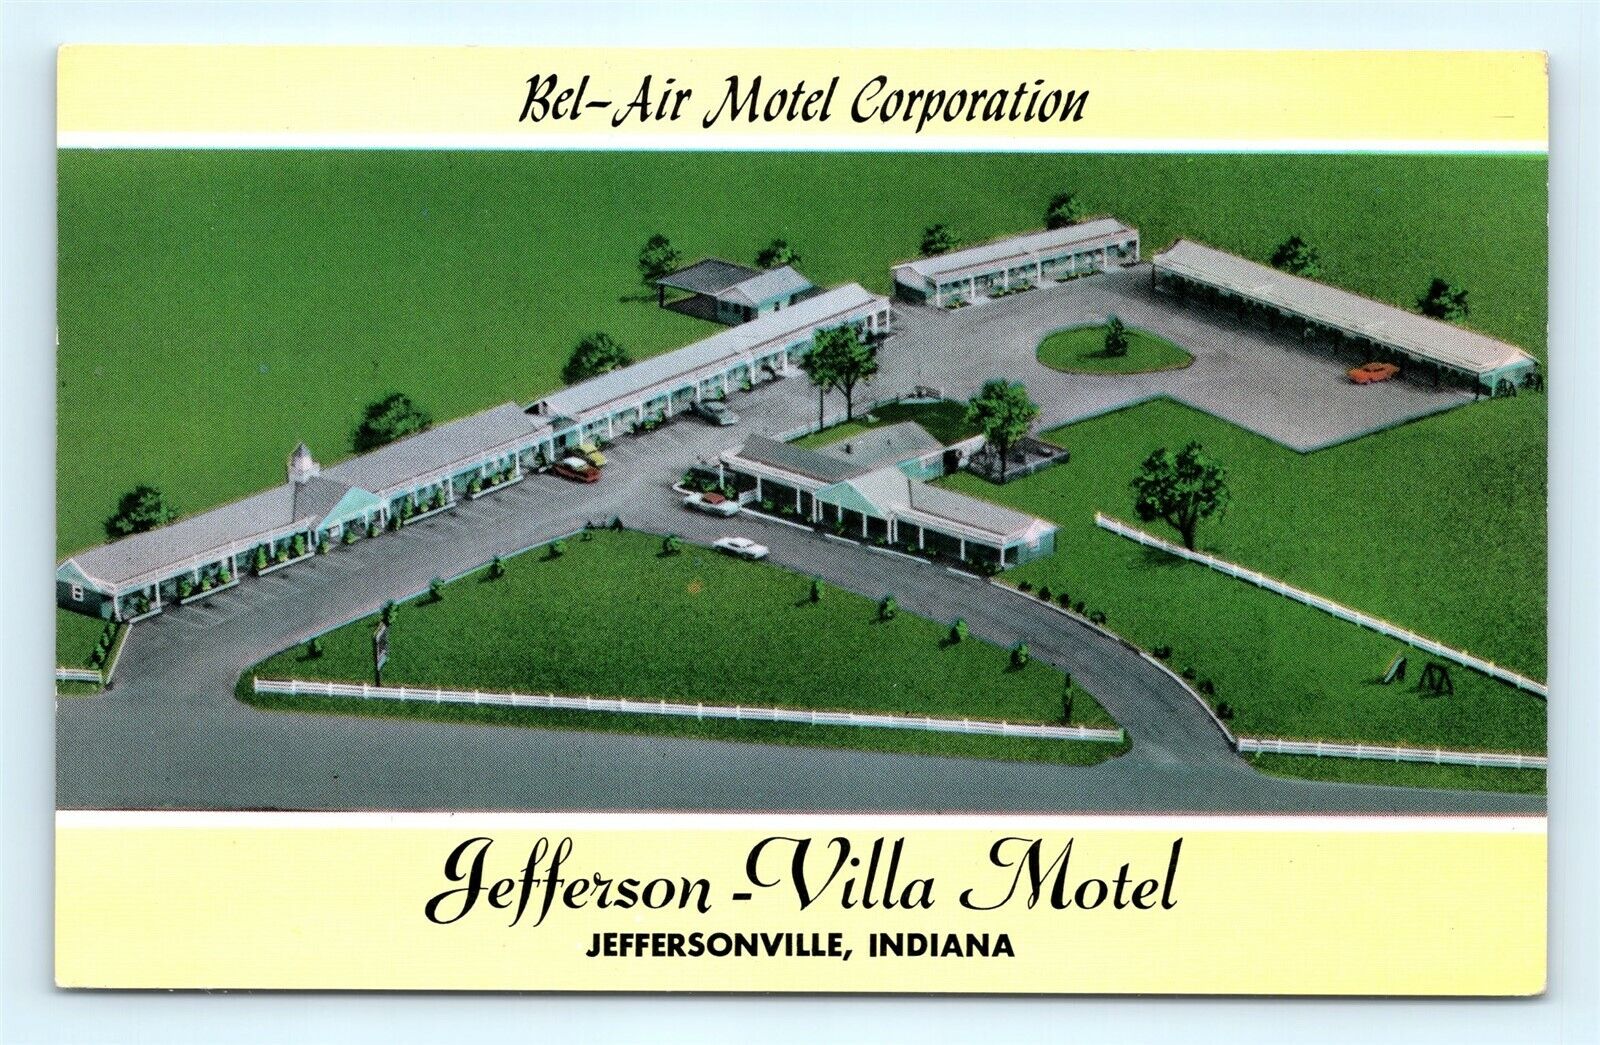 Postcard IN Jeffersonville Bel-Air Motel Corporation Jefferson Villa Motel F19